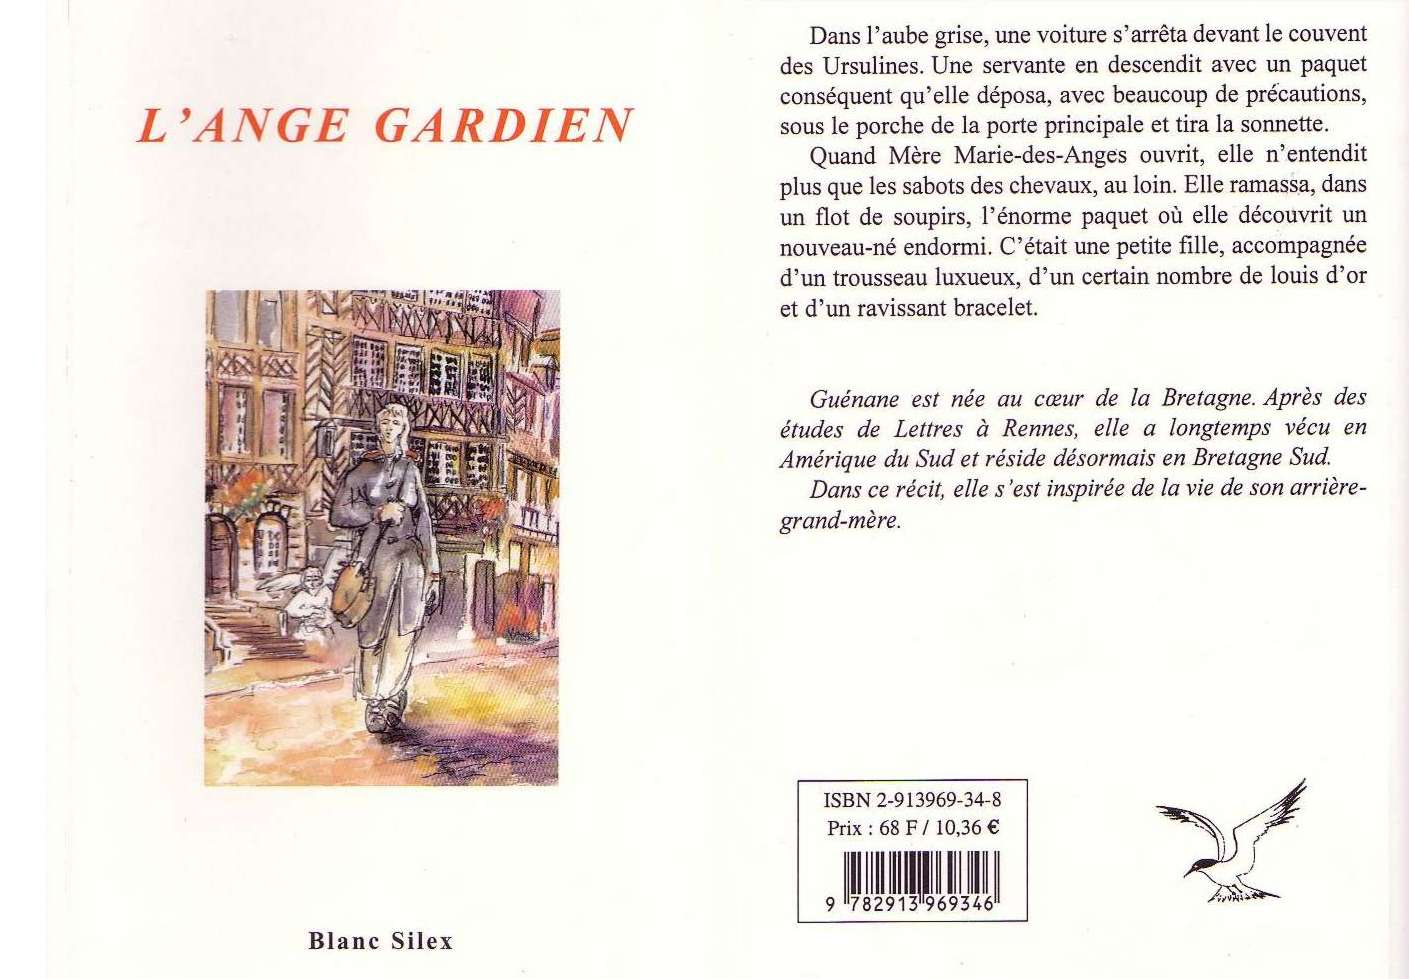 Couverture de L'Ange Gardien (ISBN 2-913969-34-8).